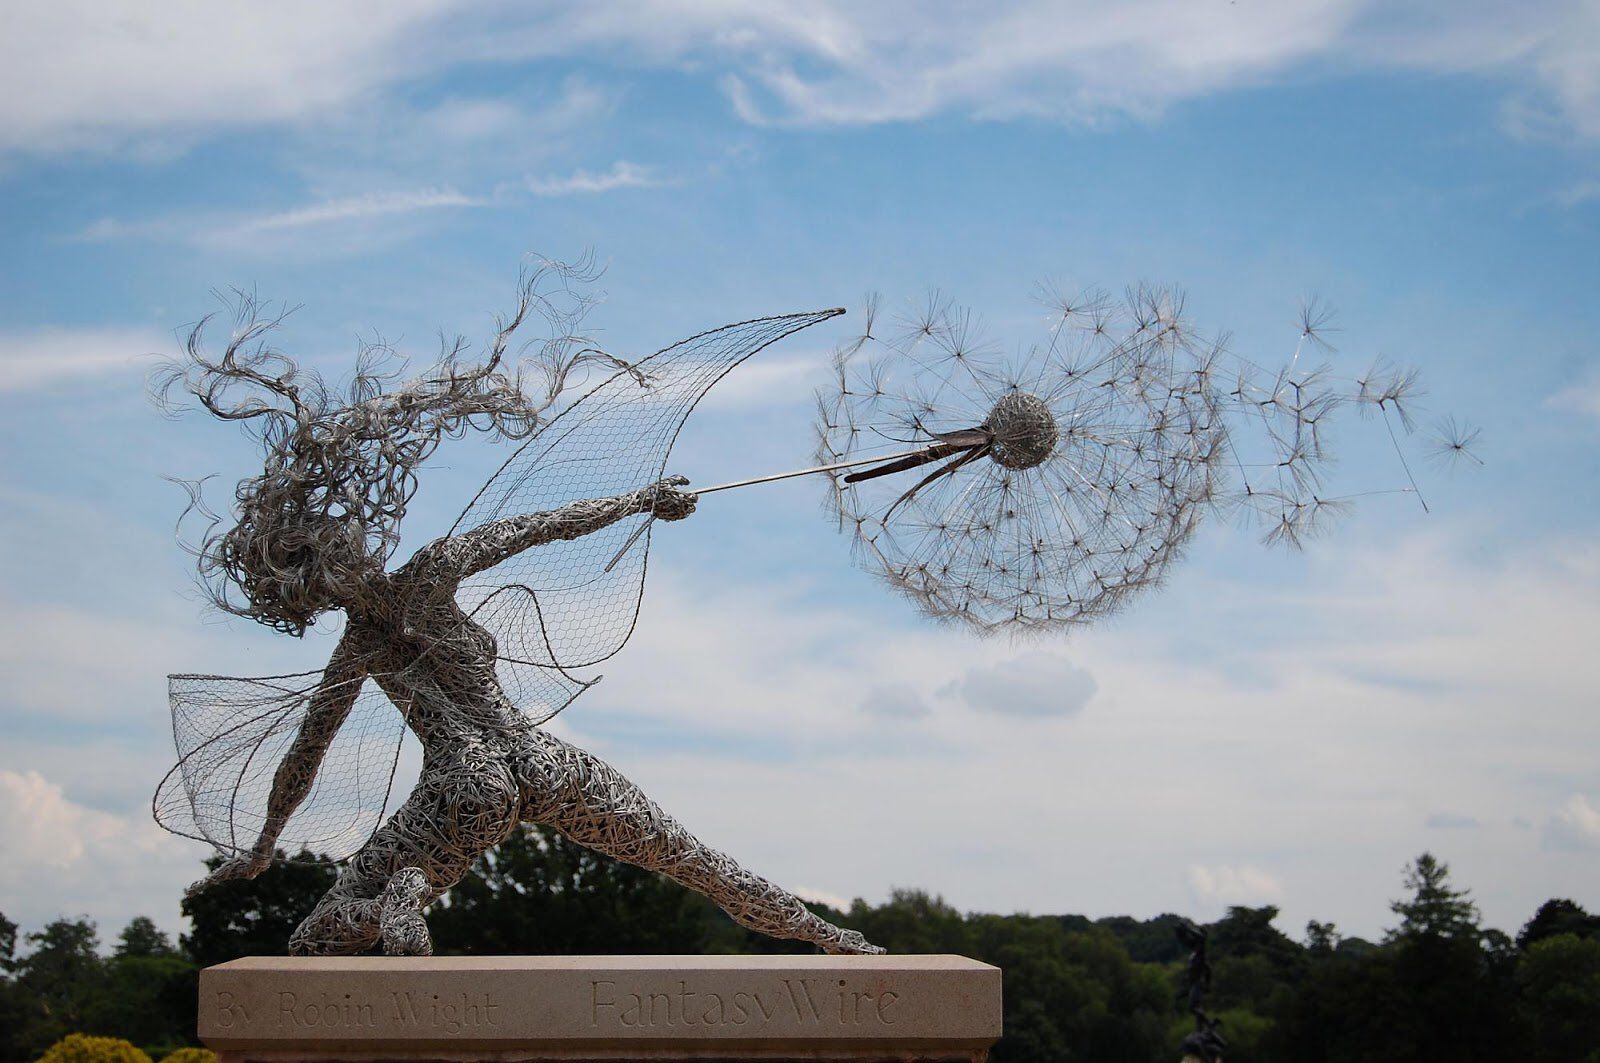 sculpture fantasy wire fairies trentham garden britain